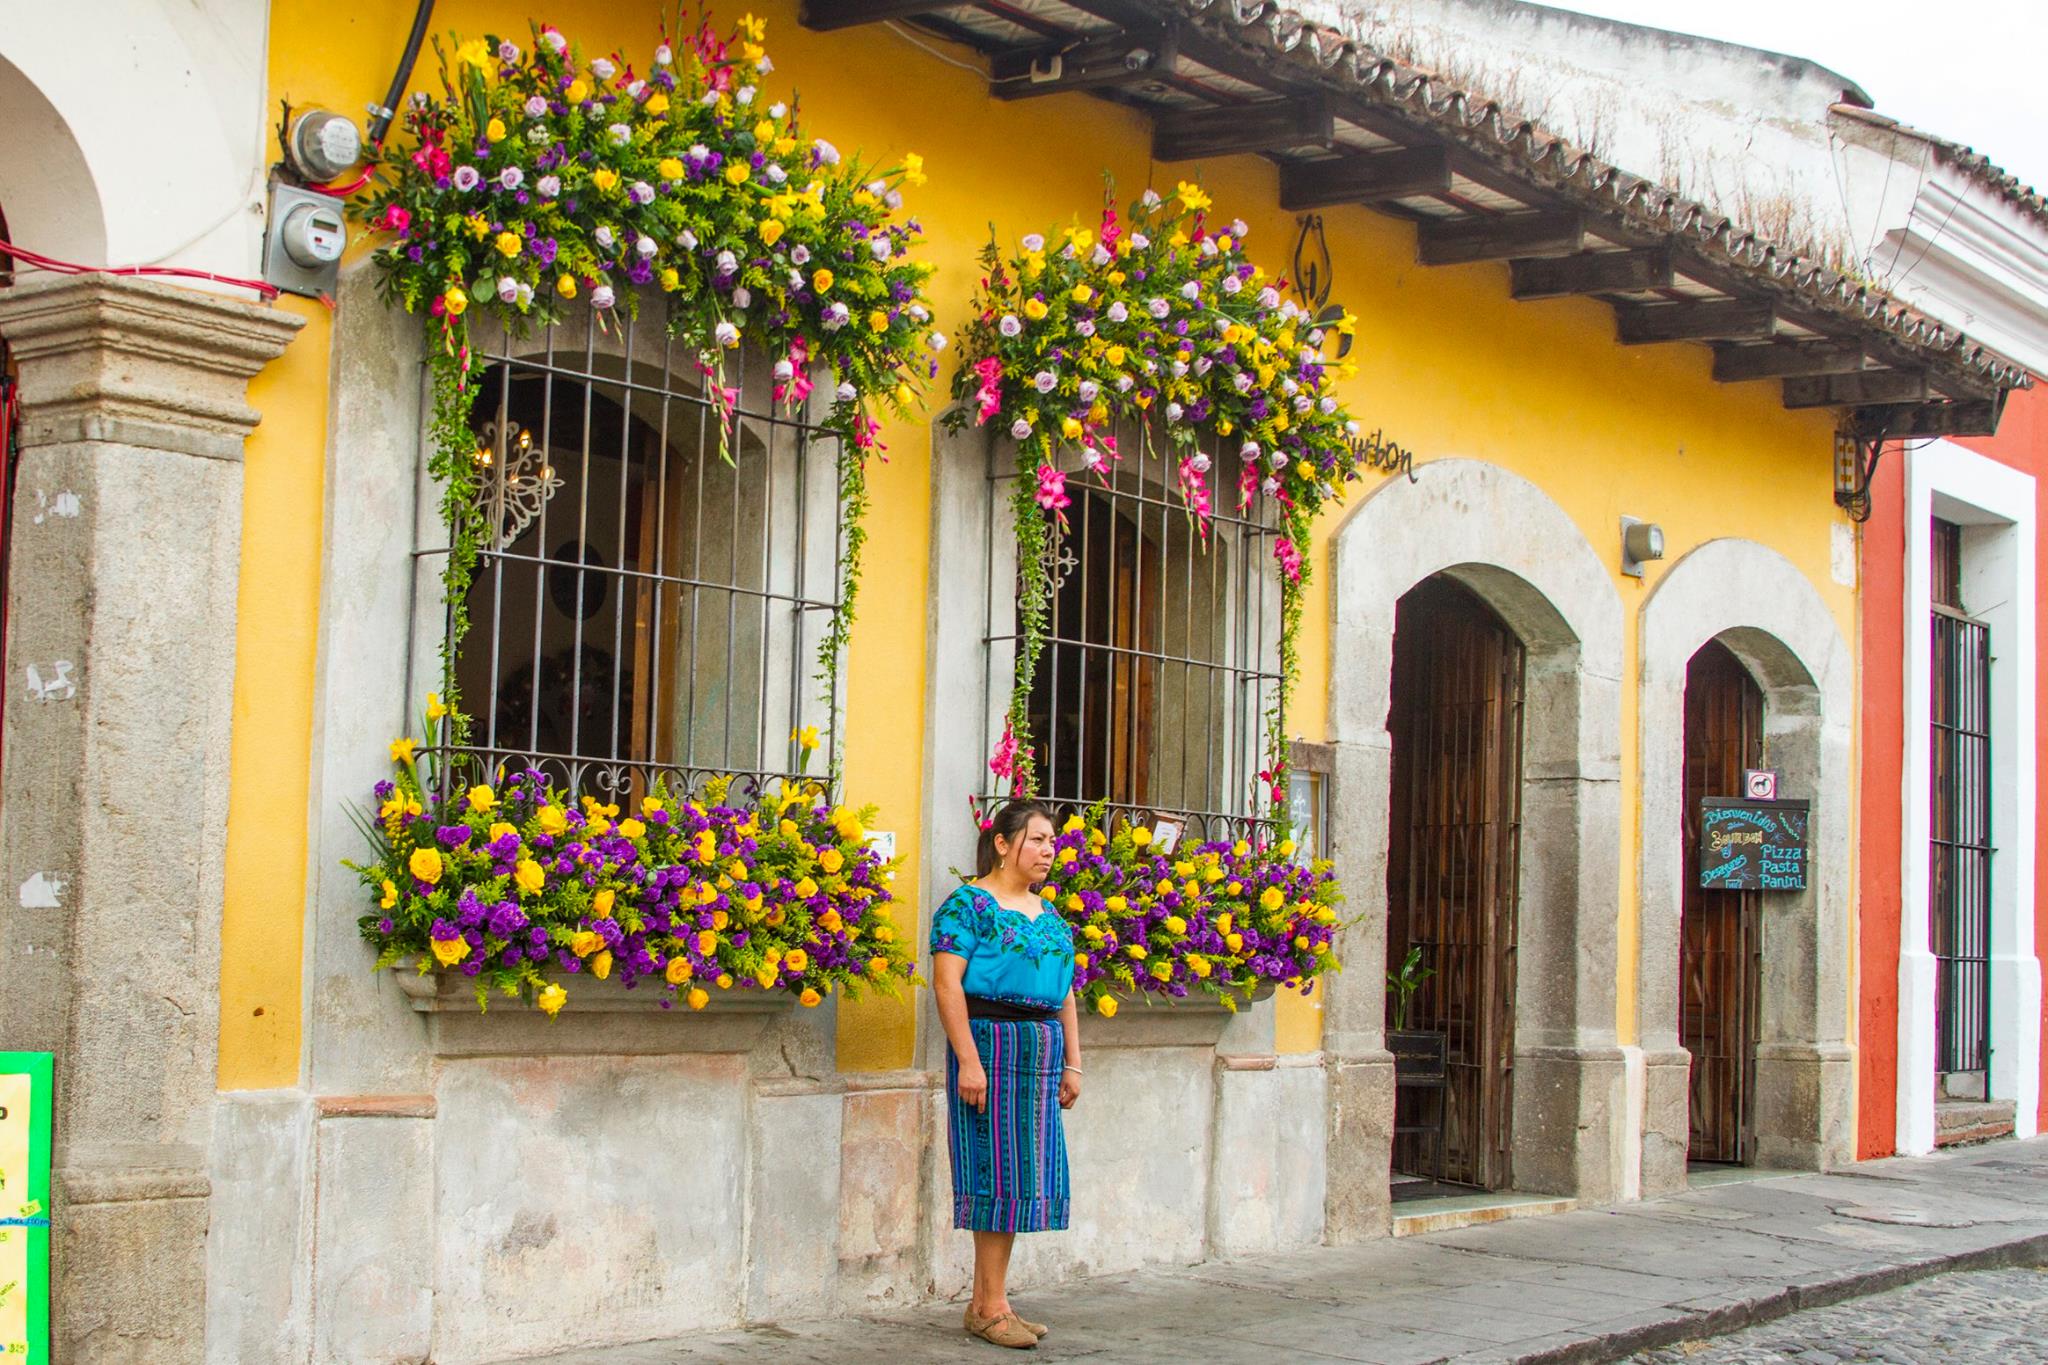 Emisoras Unidas Antigua Guatemala celebrará el Festival de las Flores